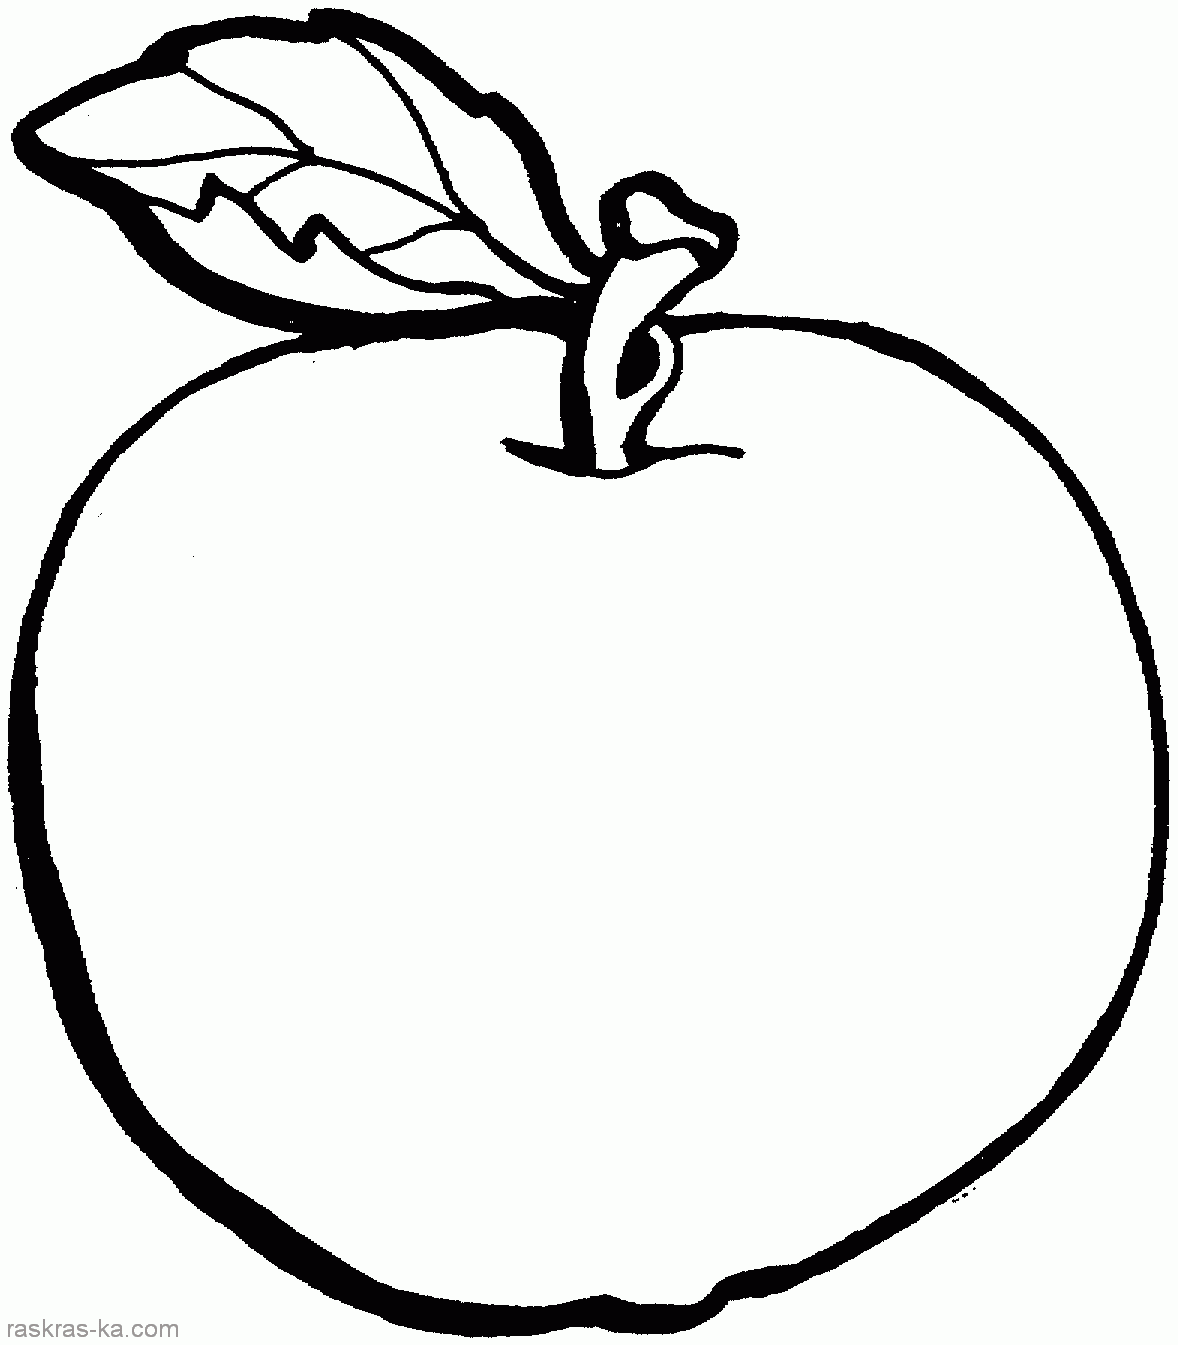 Раскраска яблоко распечатать